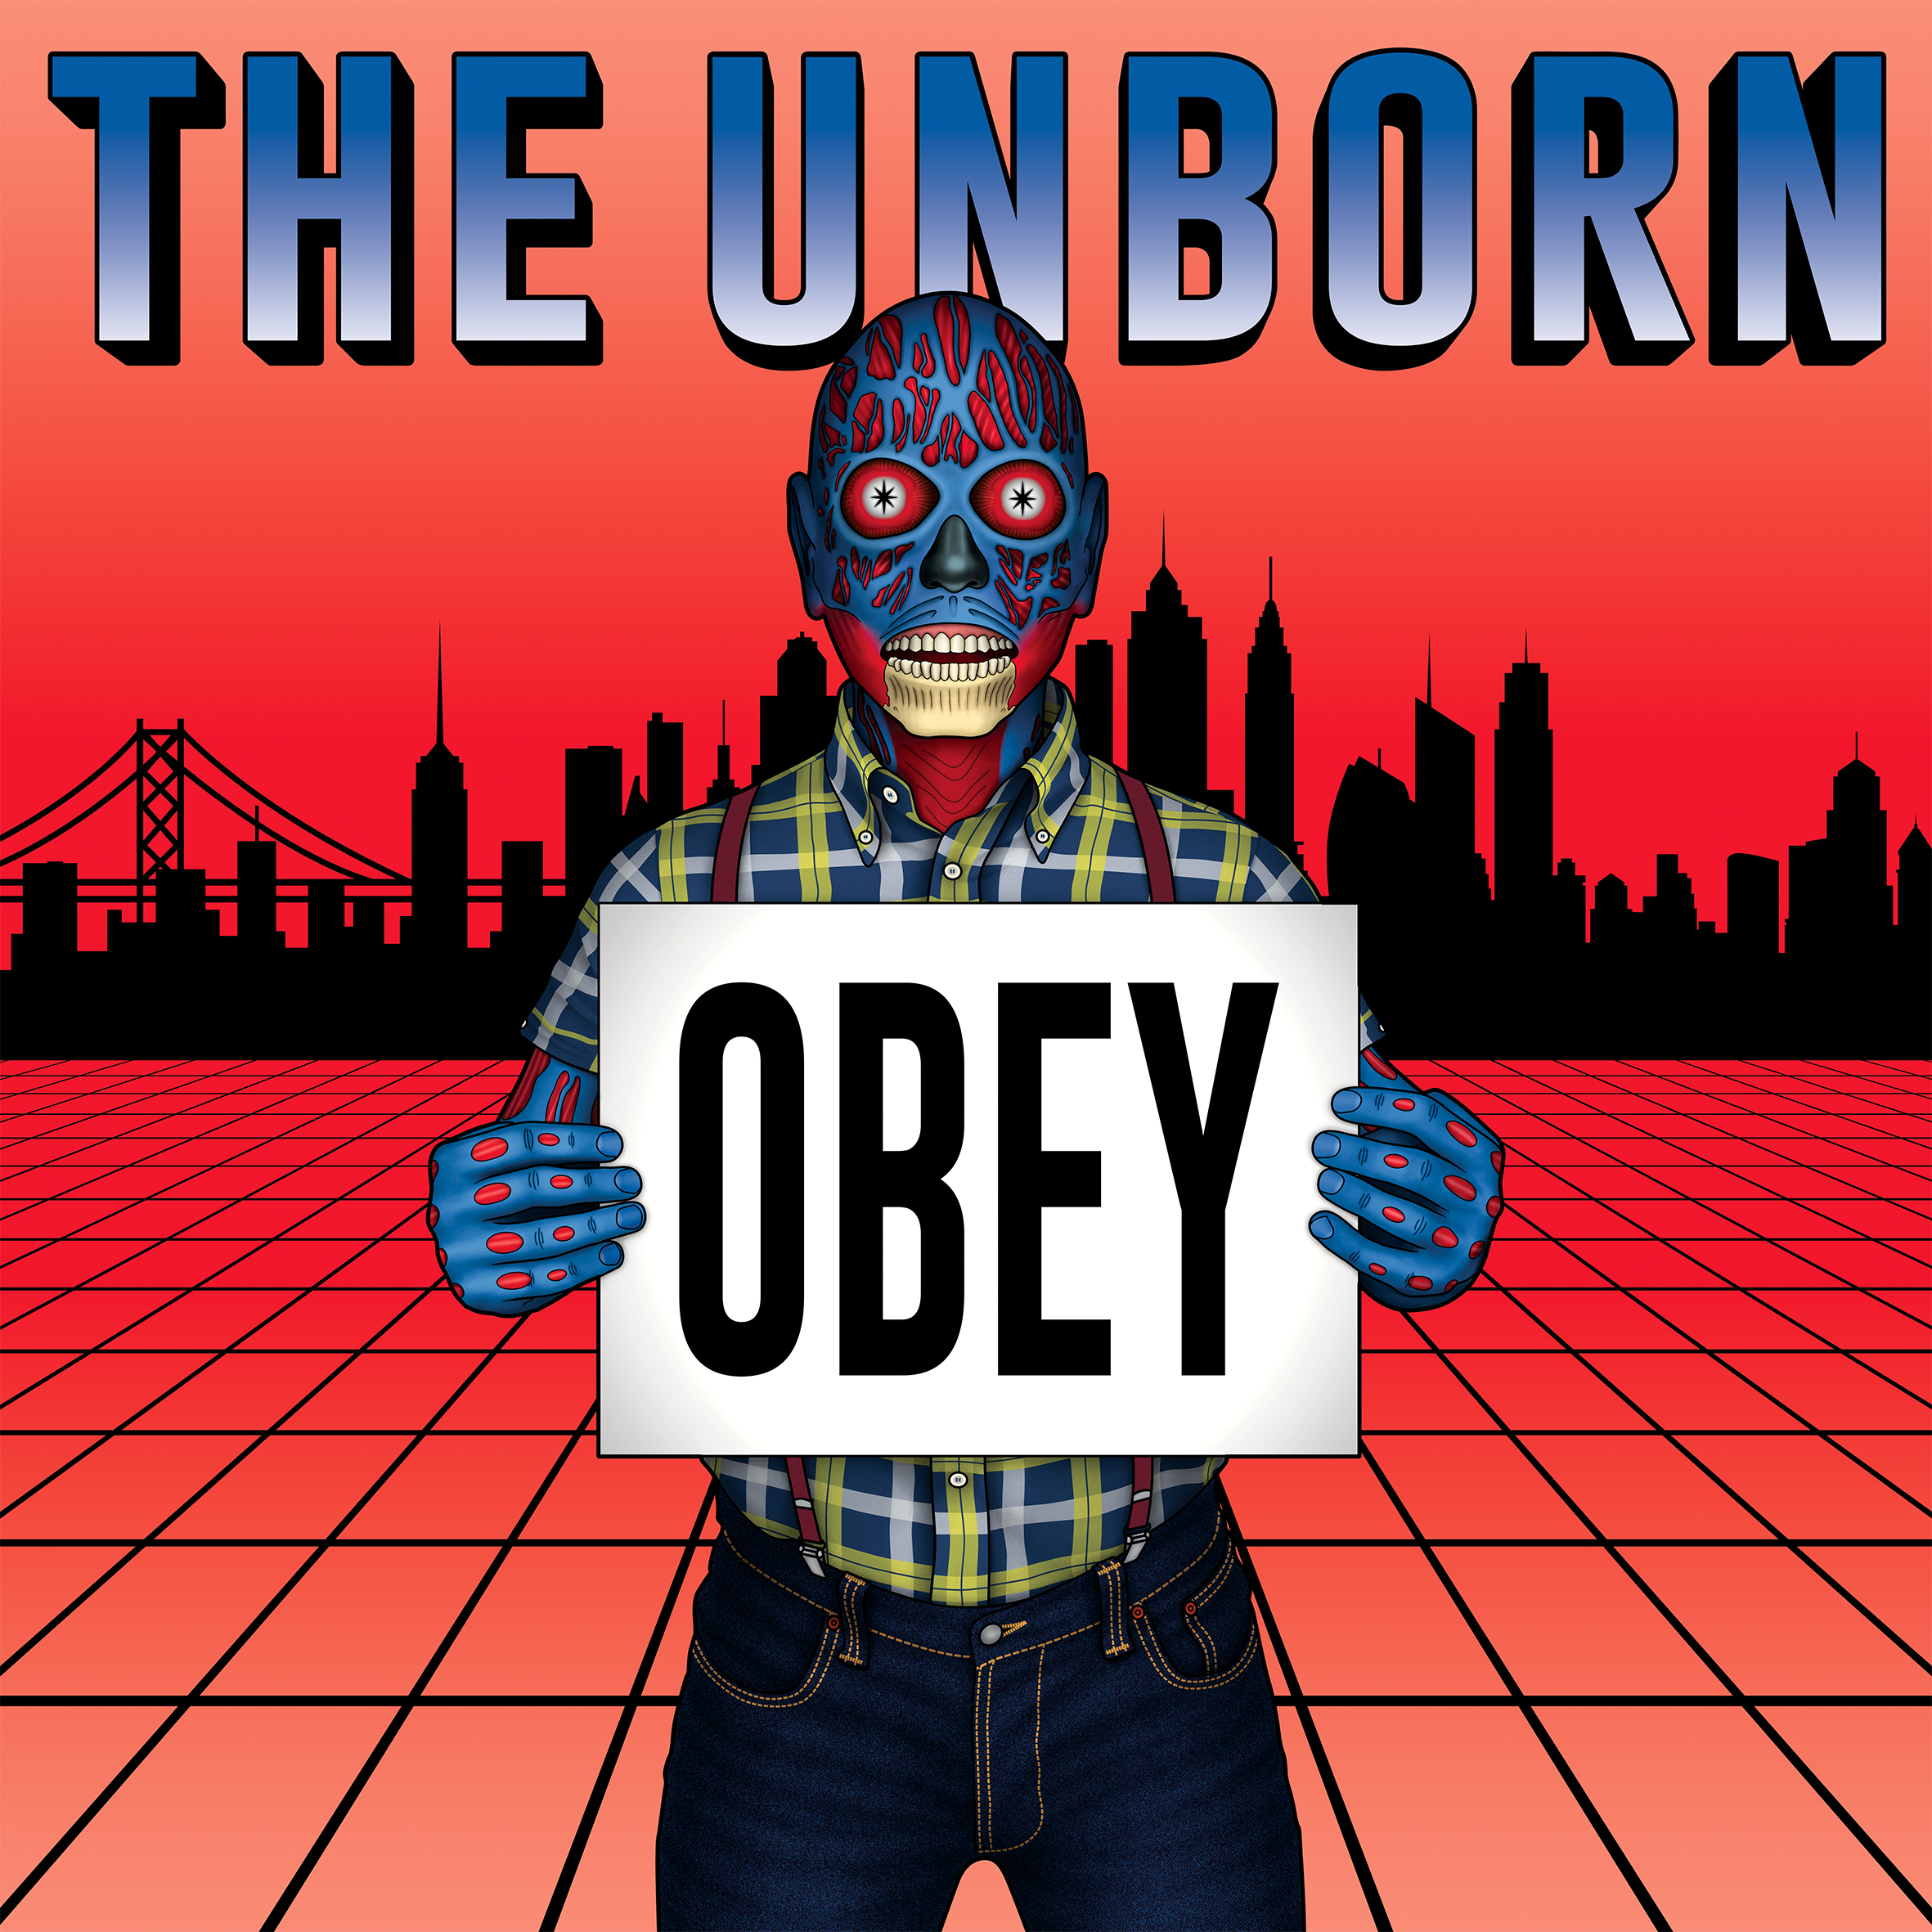 Primo disco in vinile di Skinhead Sounds: "Obey" degli Unborn